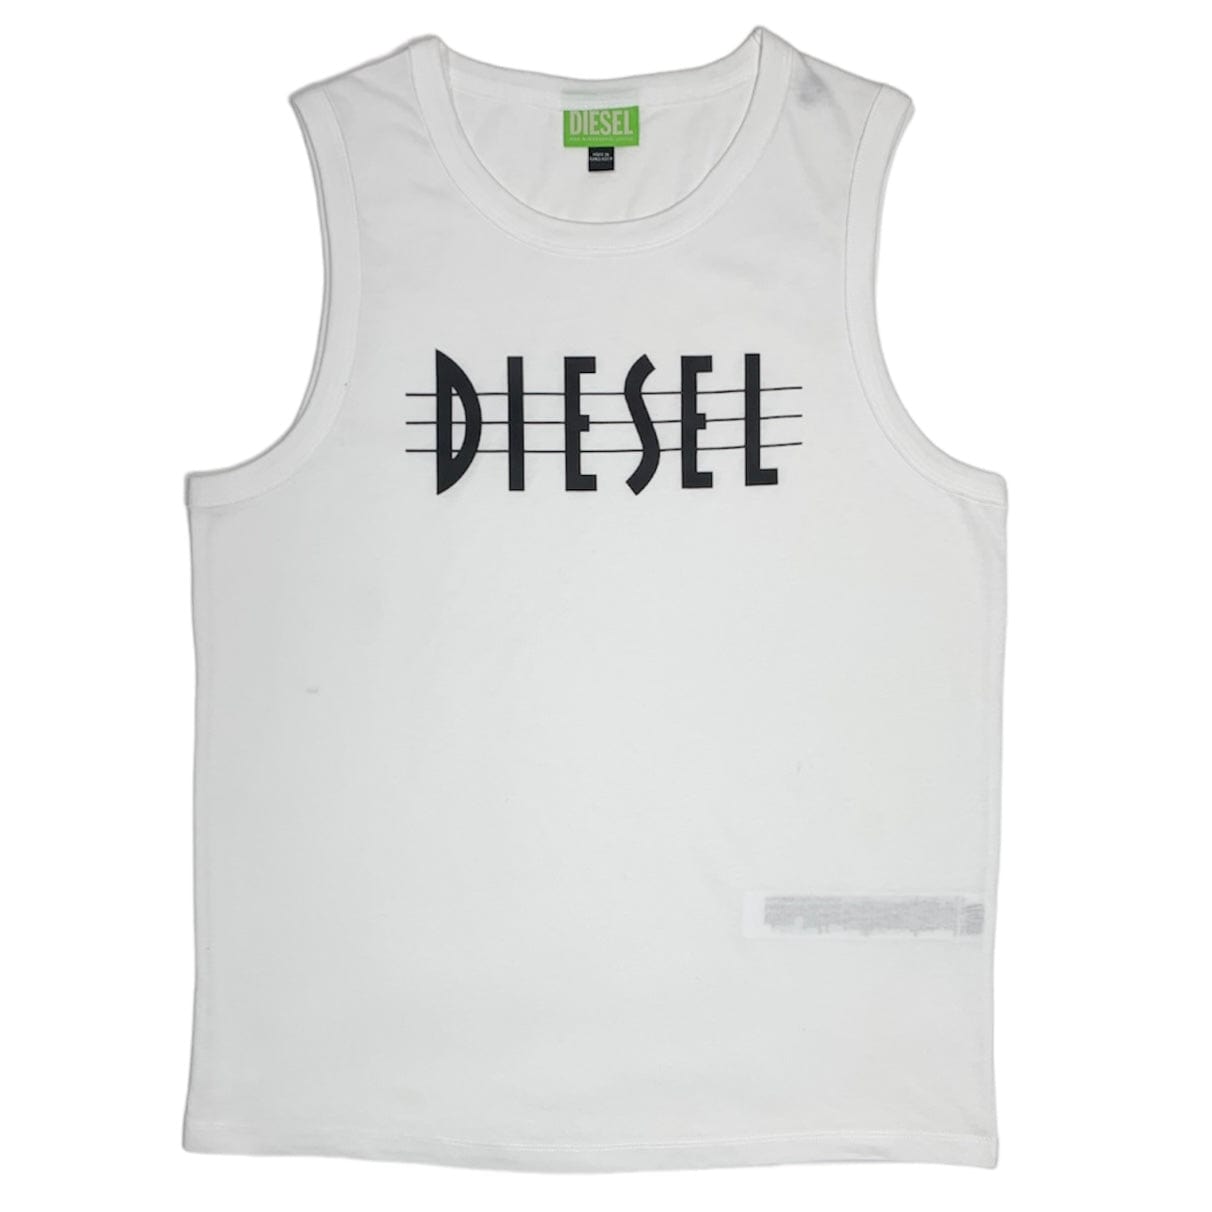 Diesel Tank Top (White) - A024580GRAF – City Man USA